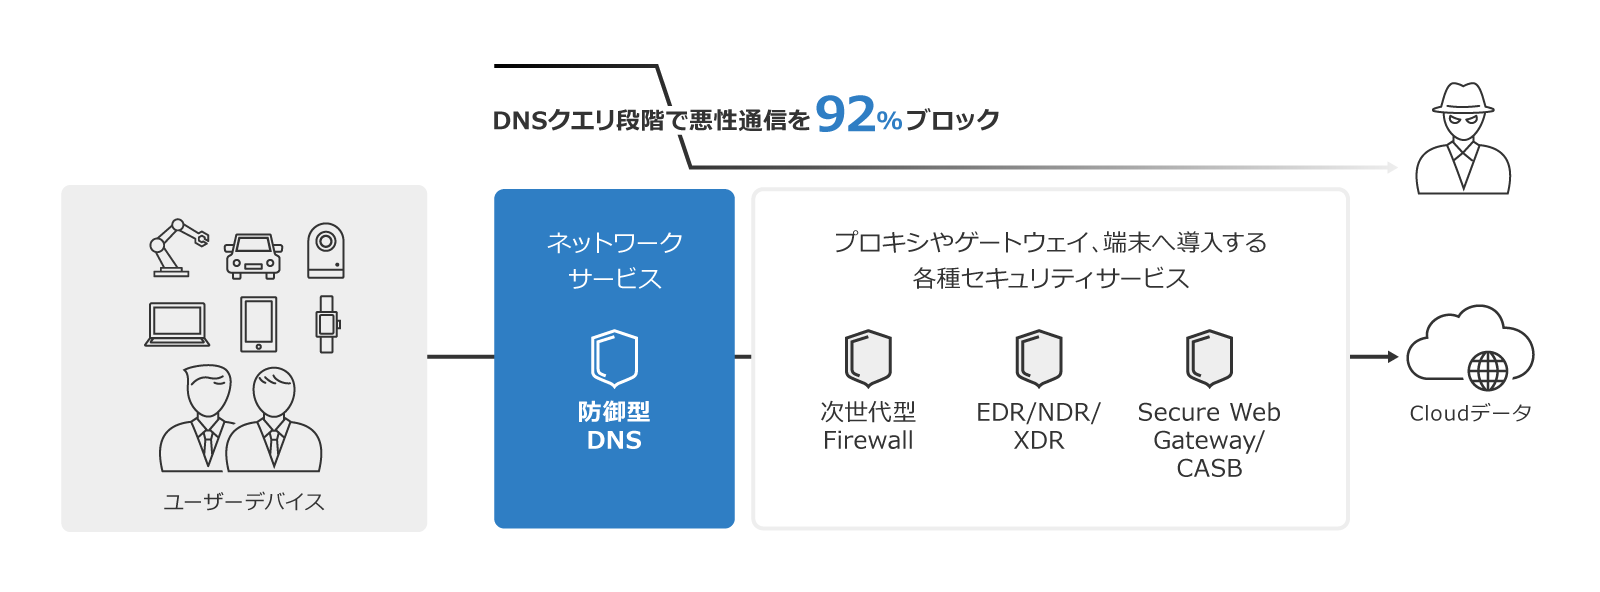 PCI DSSv4.0に準拠するためフィッシング対策－東京エレクトロンデバイス